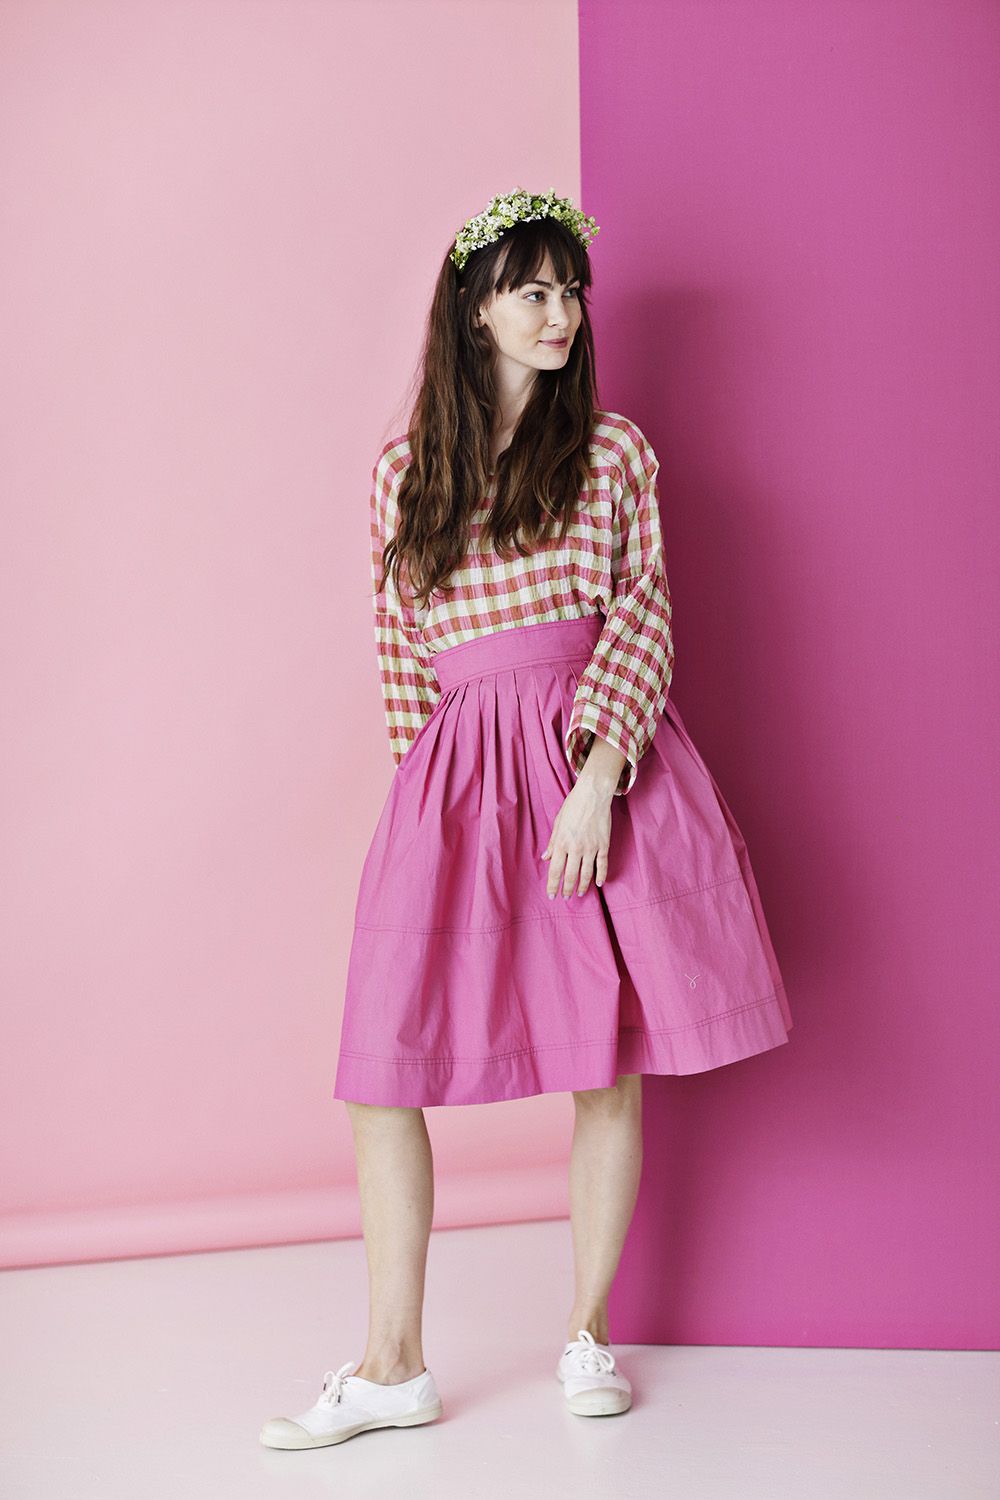 Frank Worthley Shetland chance Pink nederdel i øko bomuld | september20 | vintageinspireret nederdel